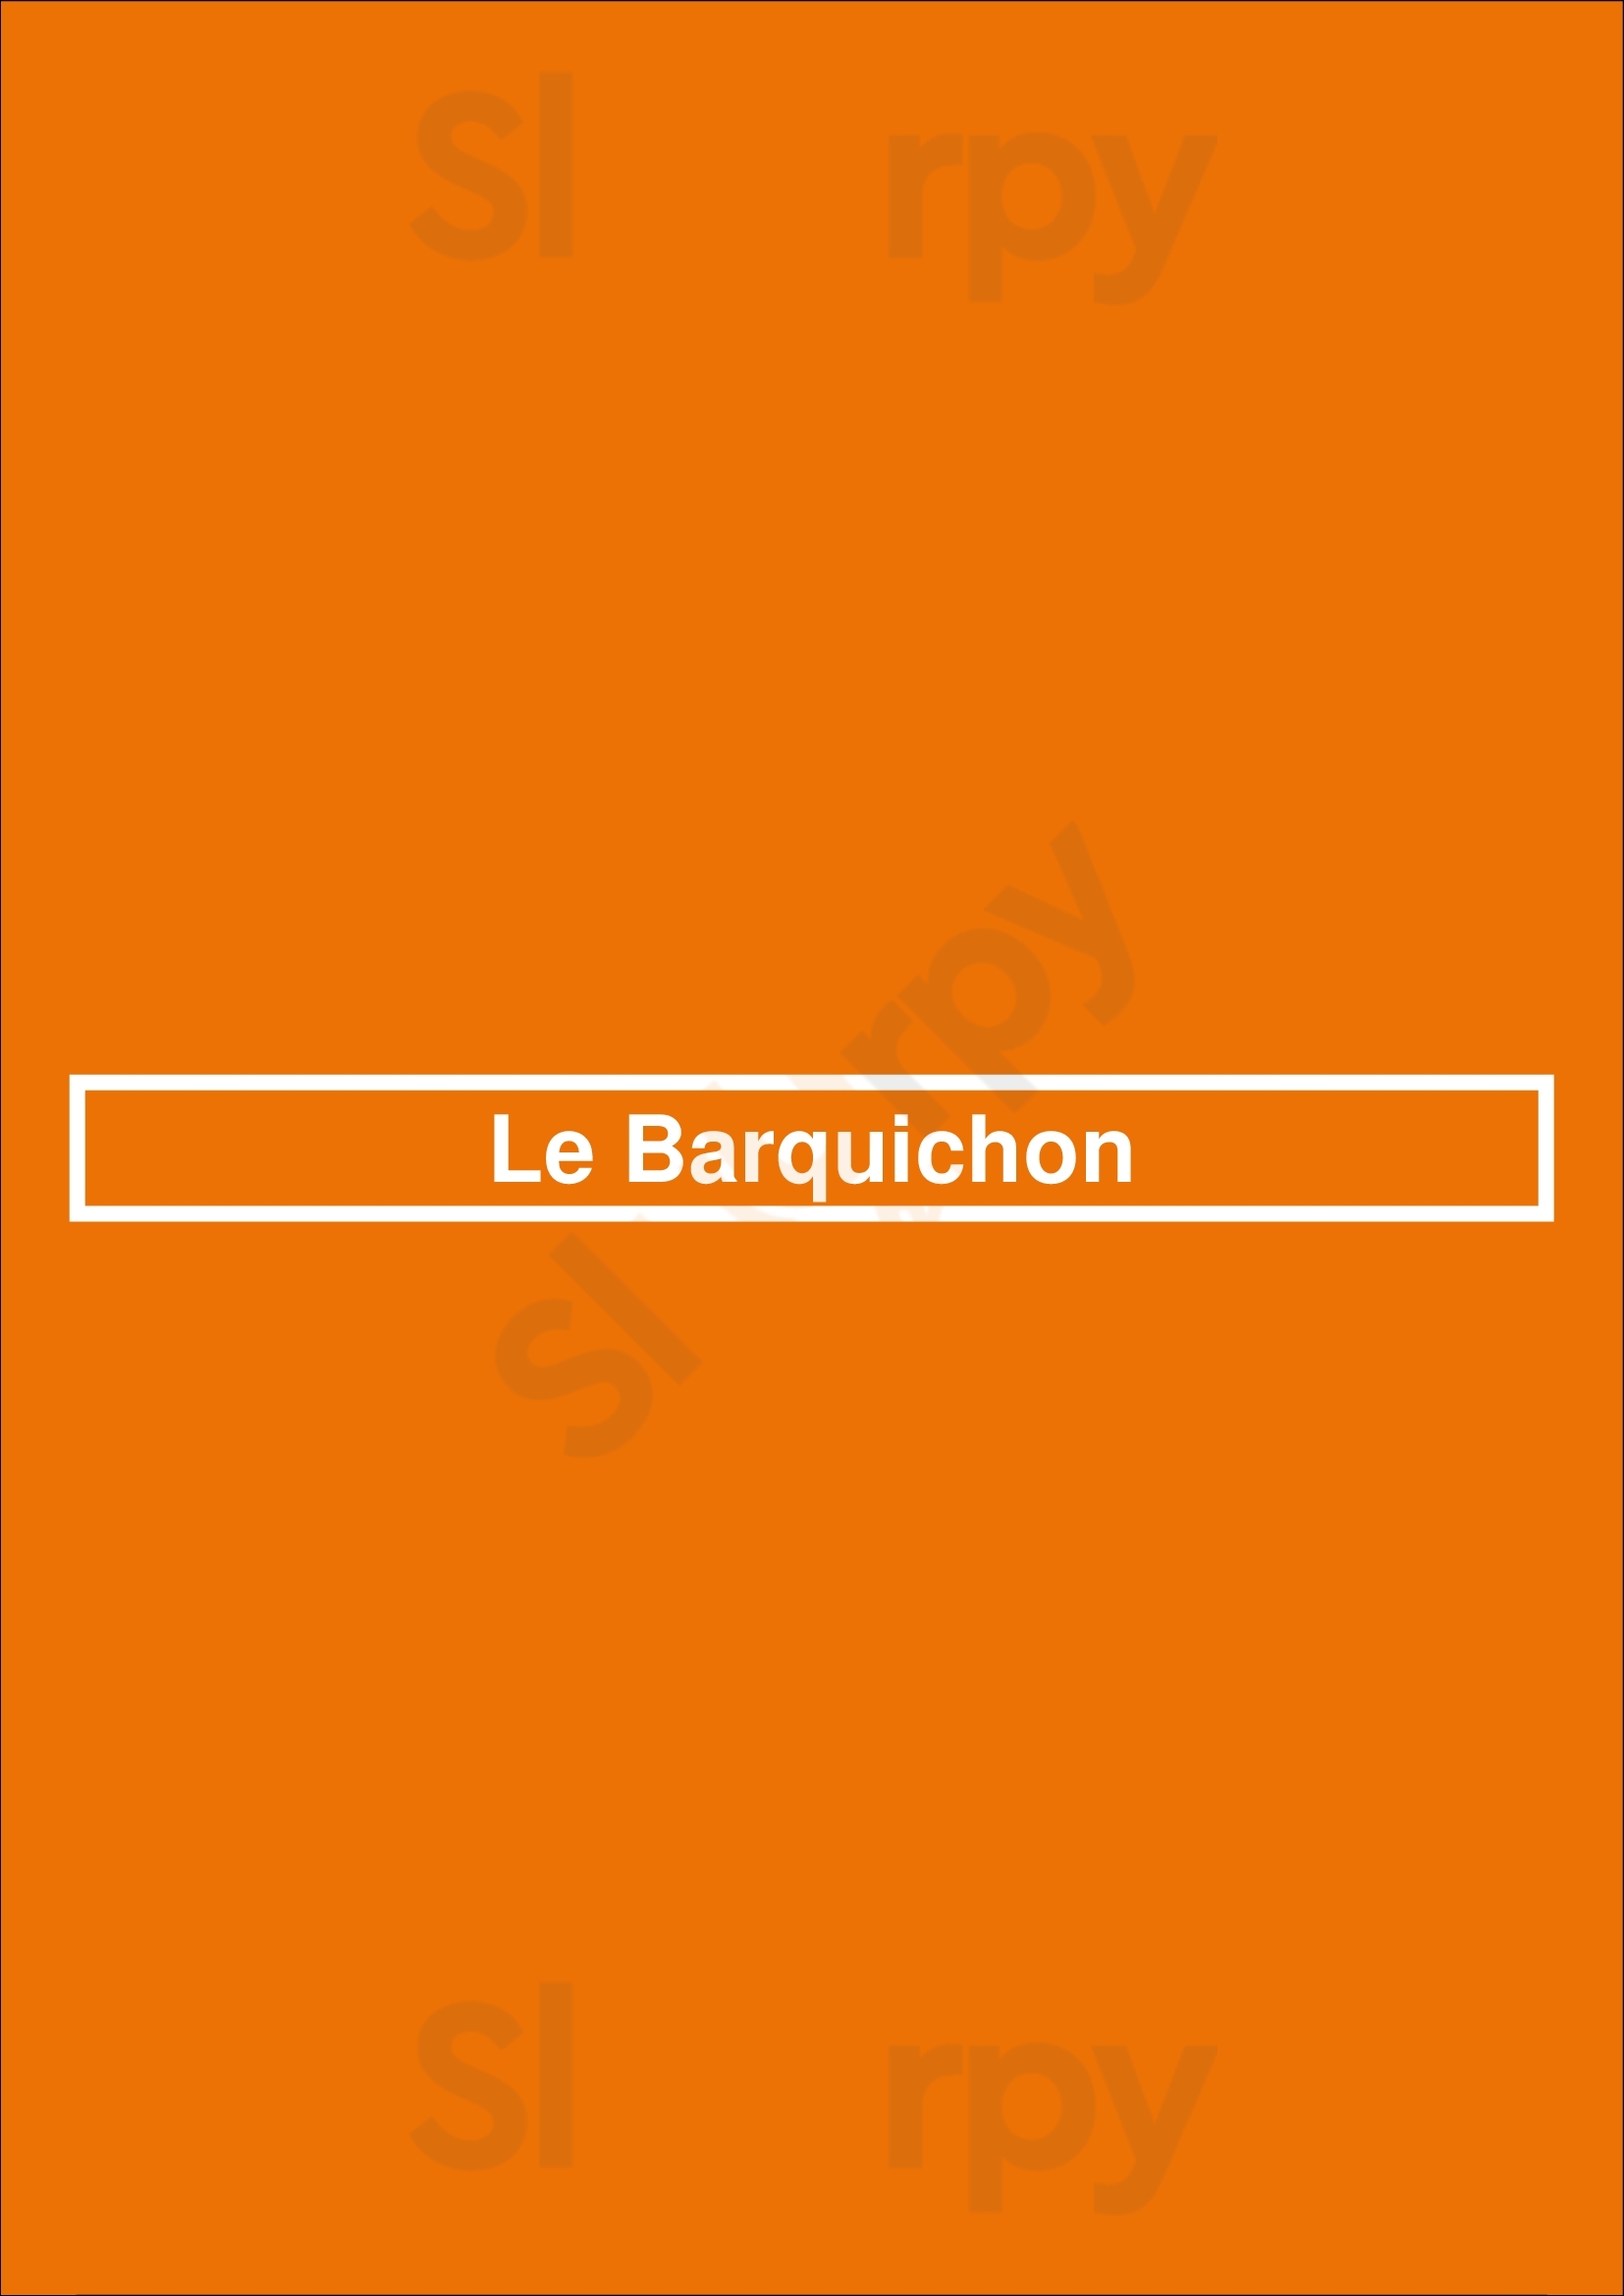 Le Barquichon Voorburg Menu - 1